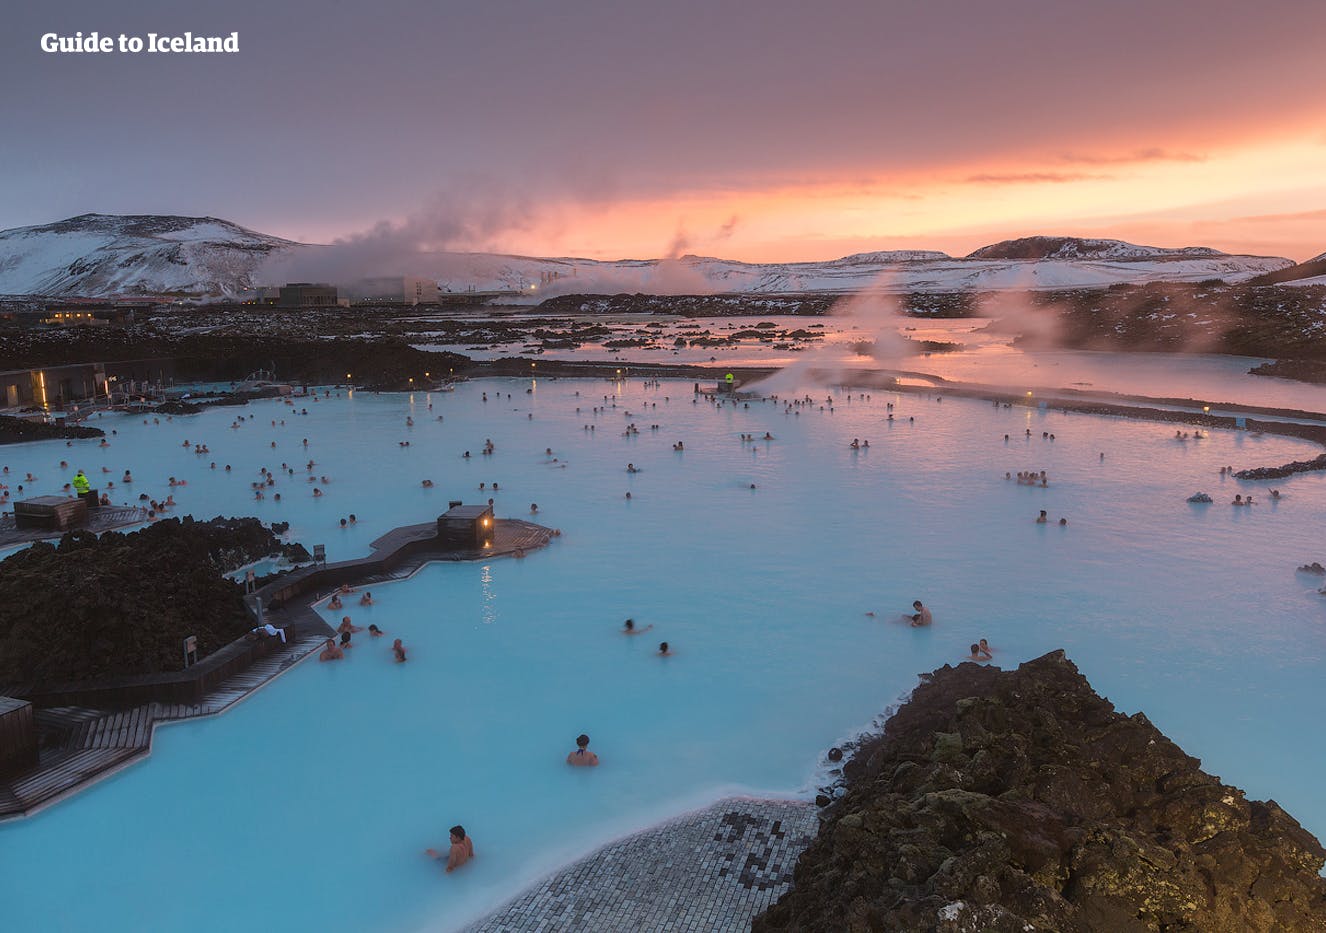 레이캬네스 반도의 용암지대에 자리잡은 블루라군에서 아이슬란드의 여행을 시작해 보세요!